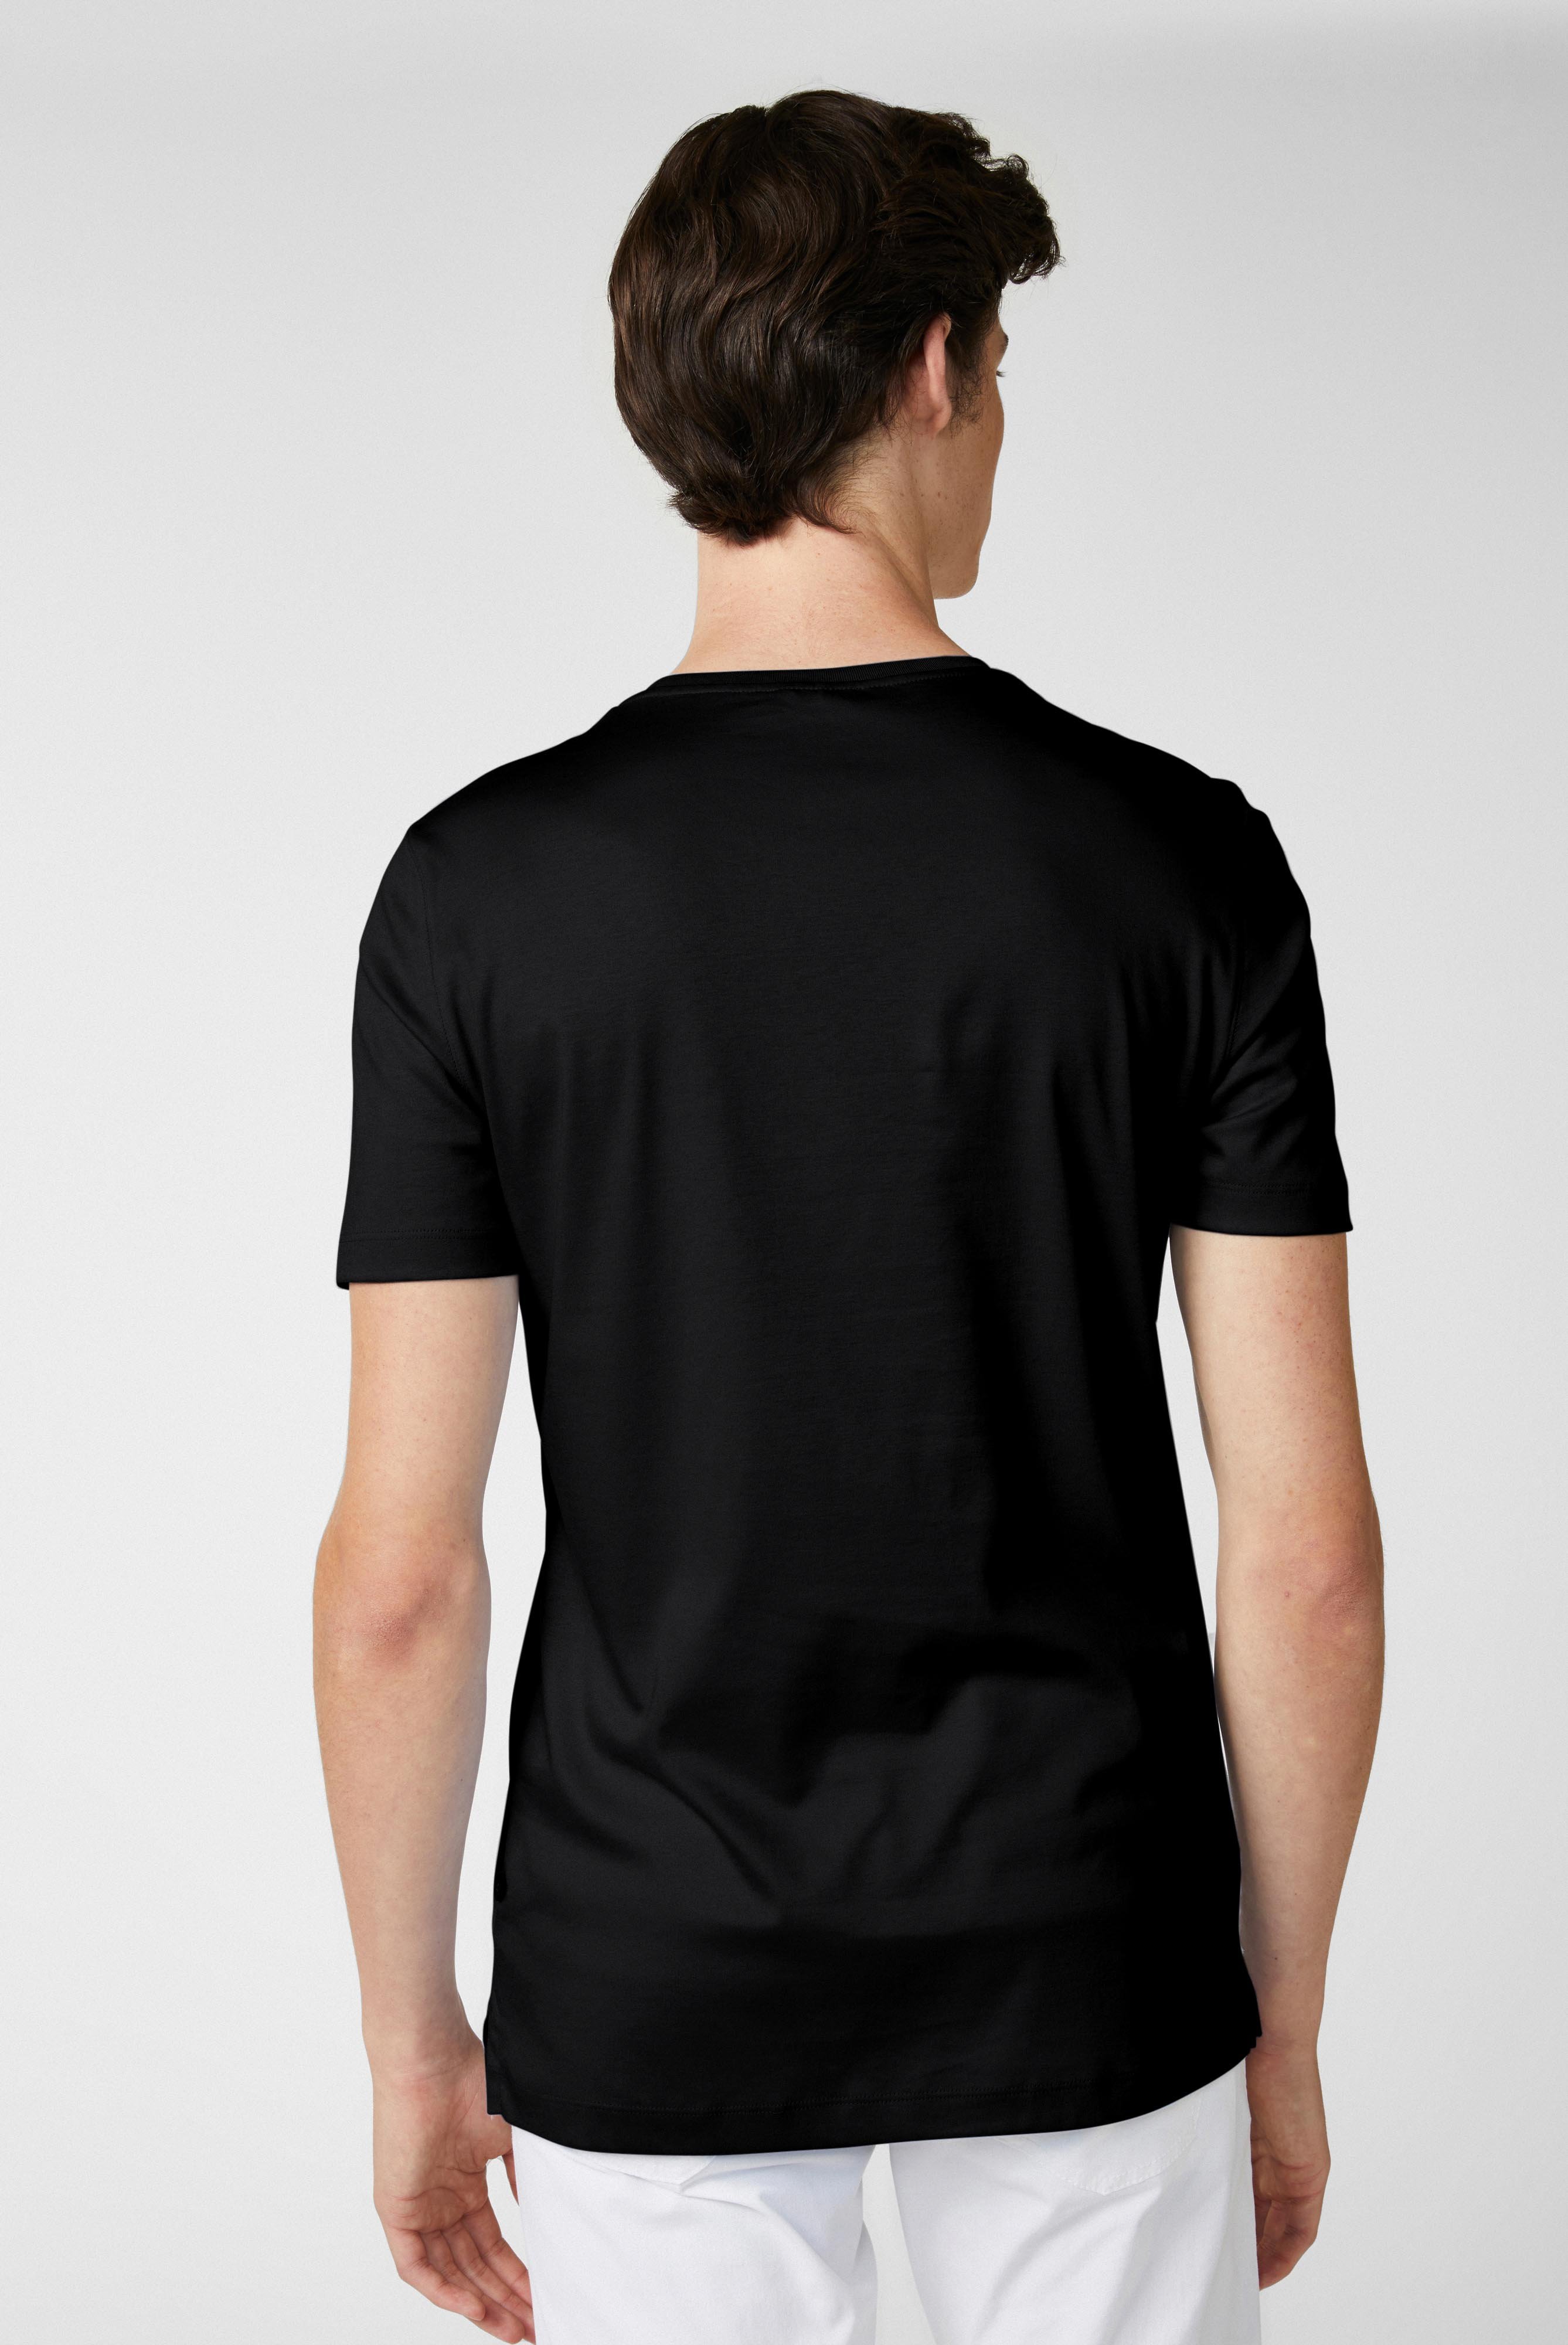 T-Shirts+Rundhals Jersey T-Shirt Slim Fit+20.1717.UX.180031.099.X4L